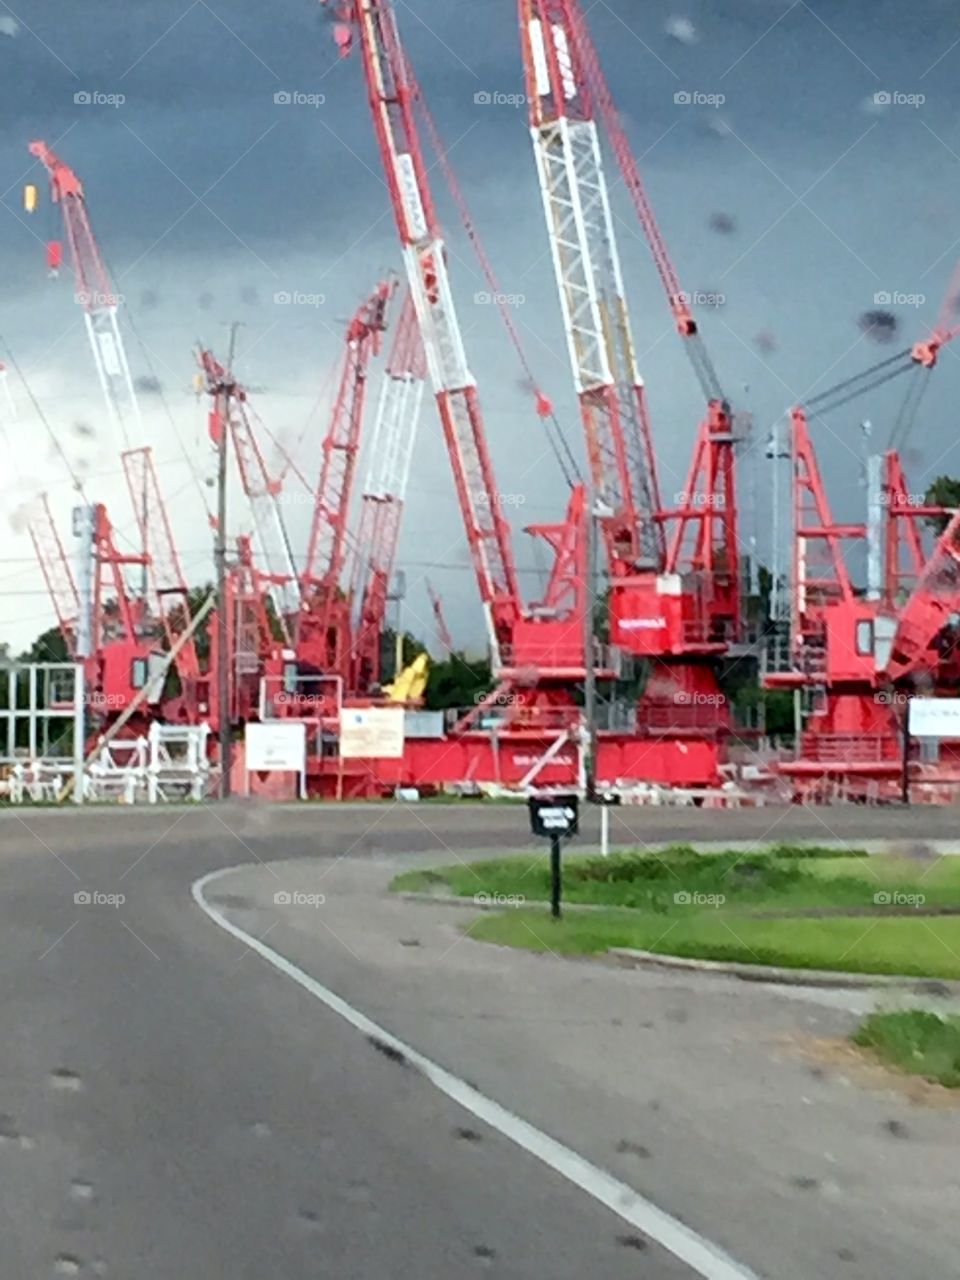 Industrial cranes